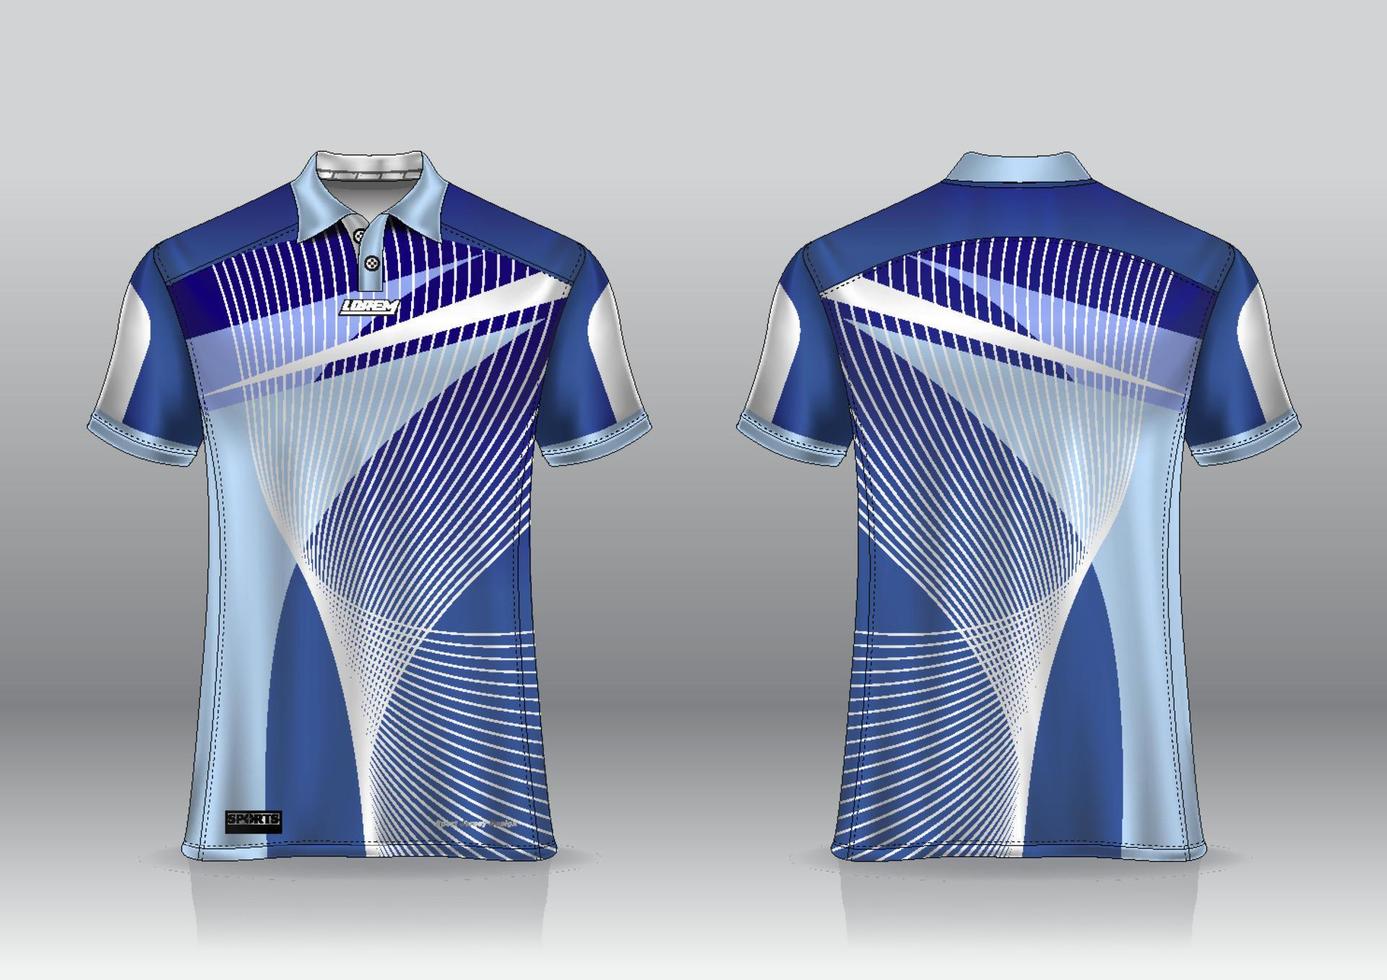 pikétröja uniform design, kan användas för badminton, golf framifrån, bakifrån. jersey mockup vektor, design premium mycket enkel och lätt att anpassa vektor